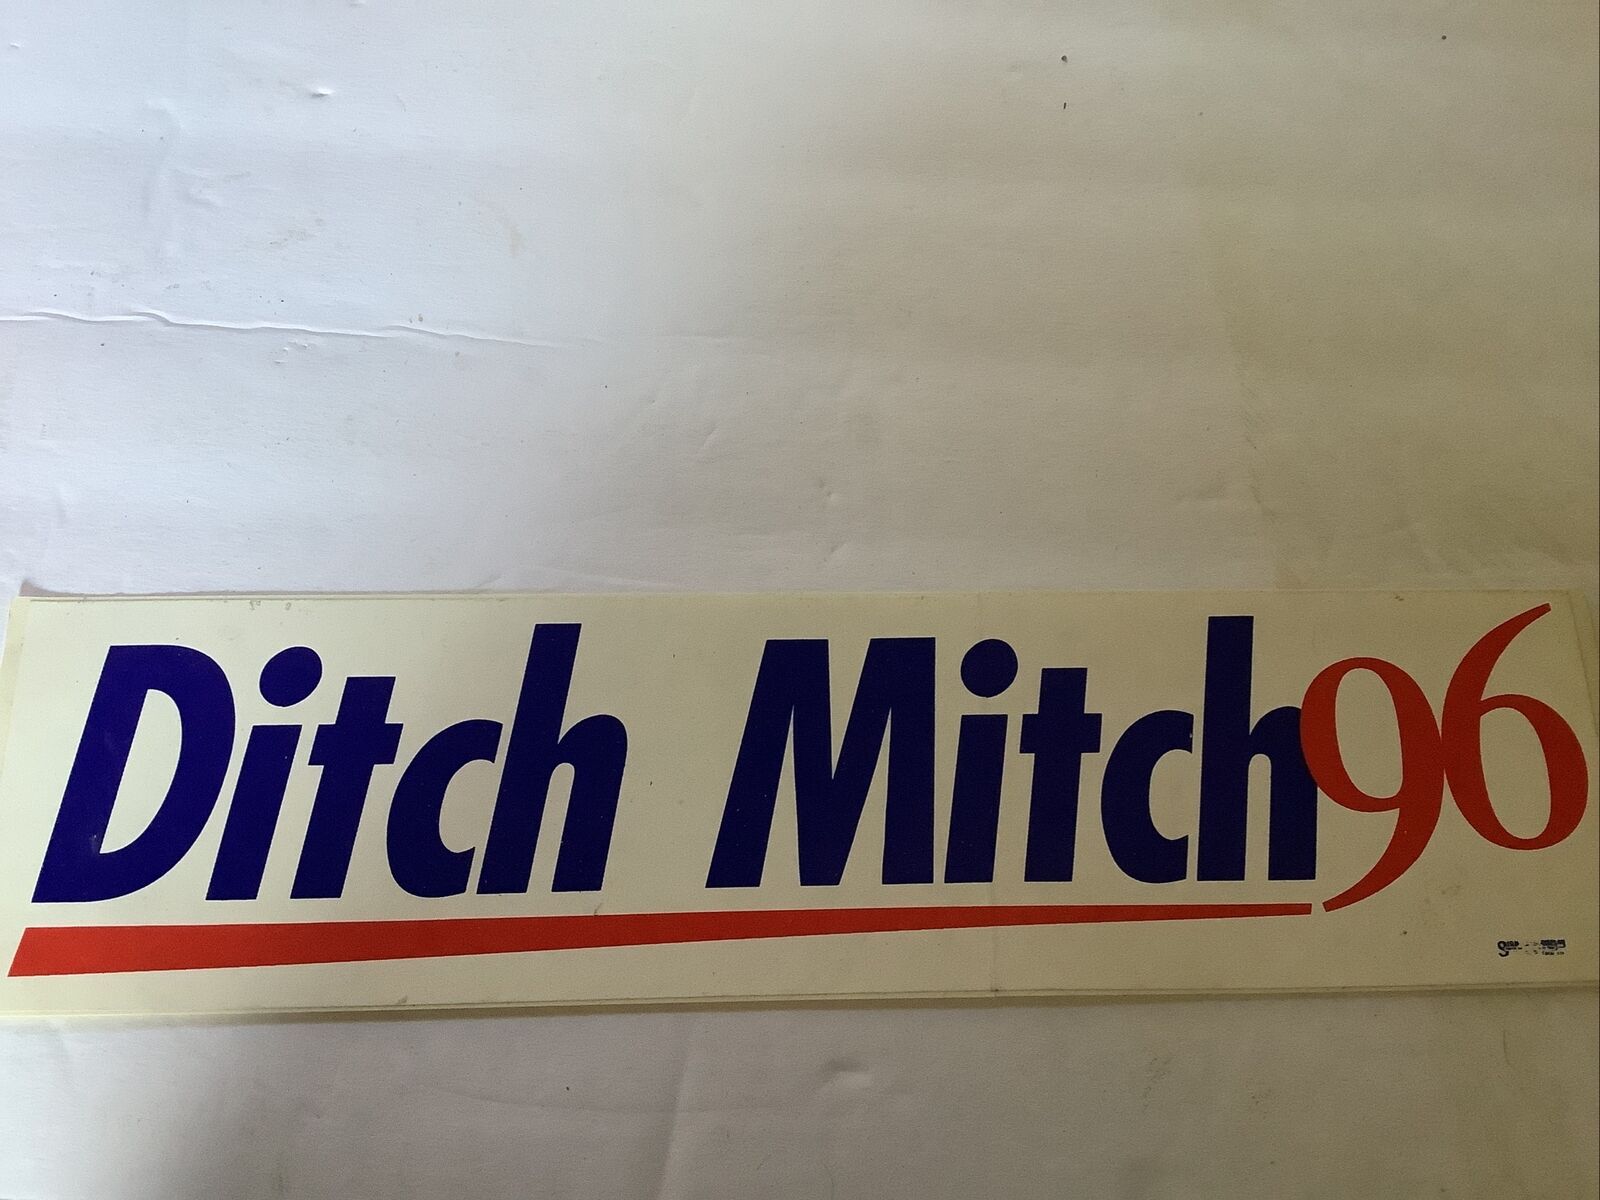 Vintage 1996 Ditch Mitch - Anti Mitch McConnell Bumper Sticker